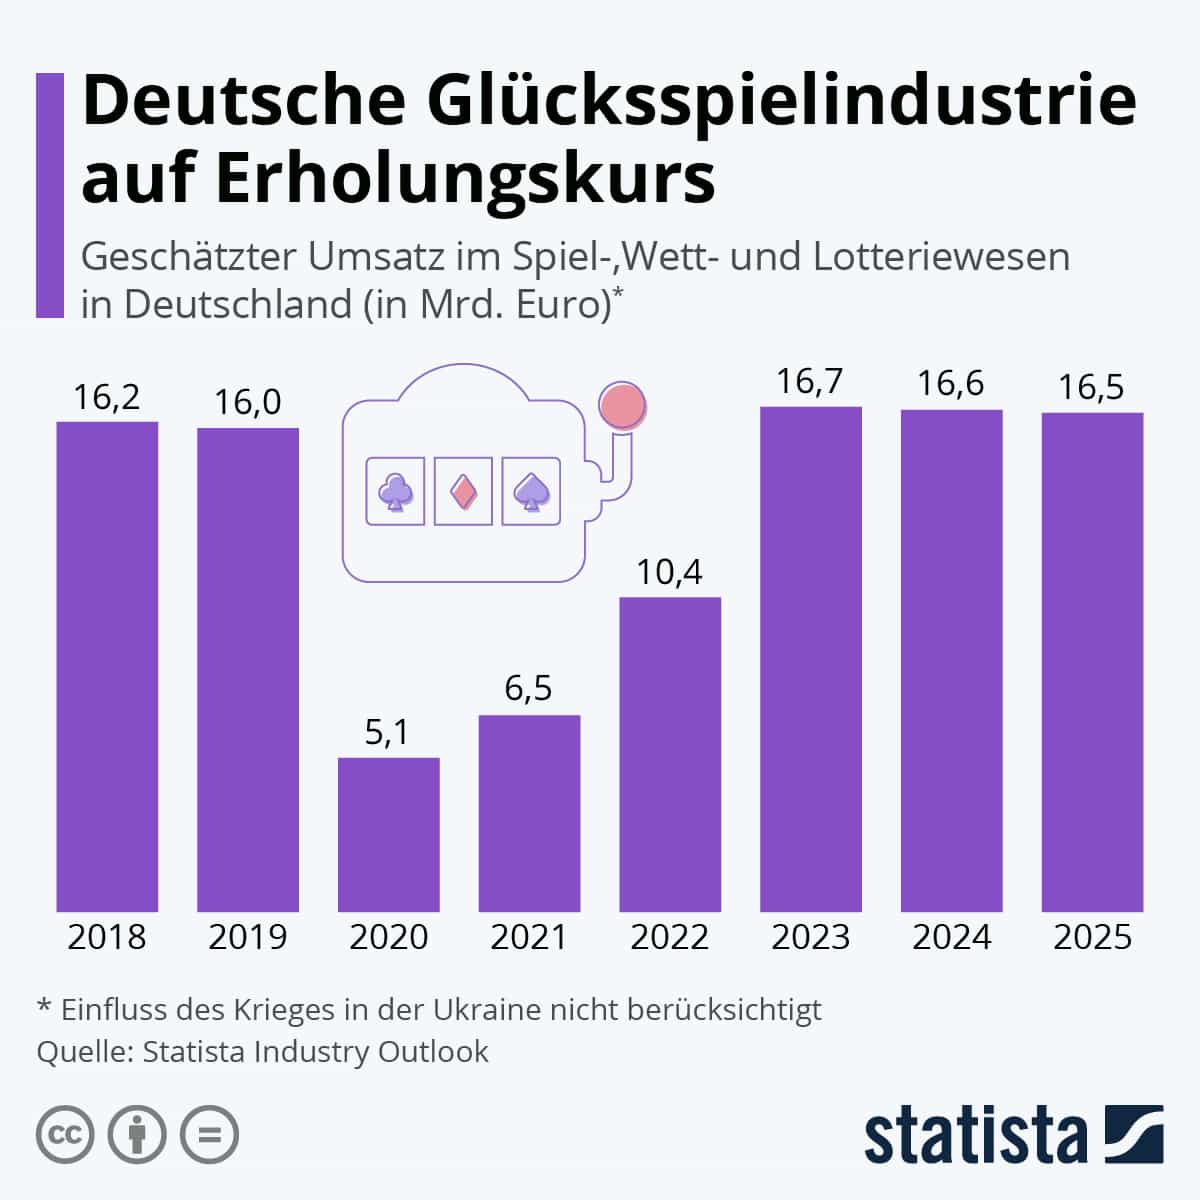 Grafik des Glücksspielmarktes in Deutschland mit Prognosen bis 2025